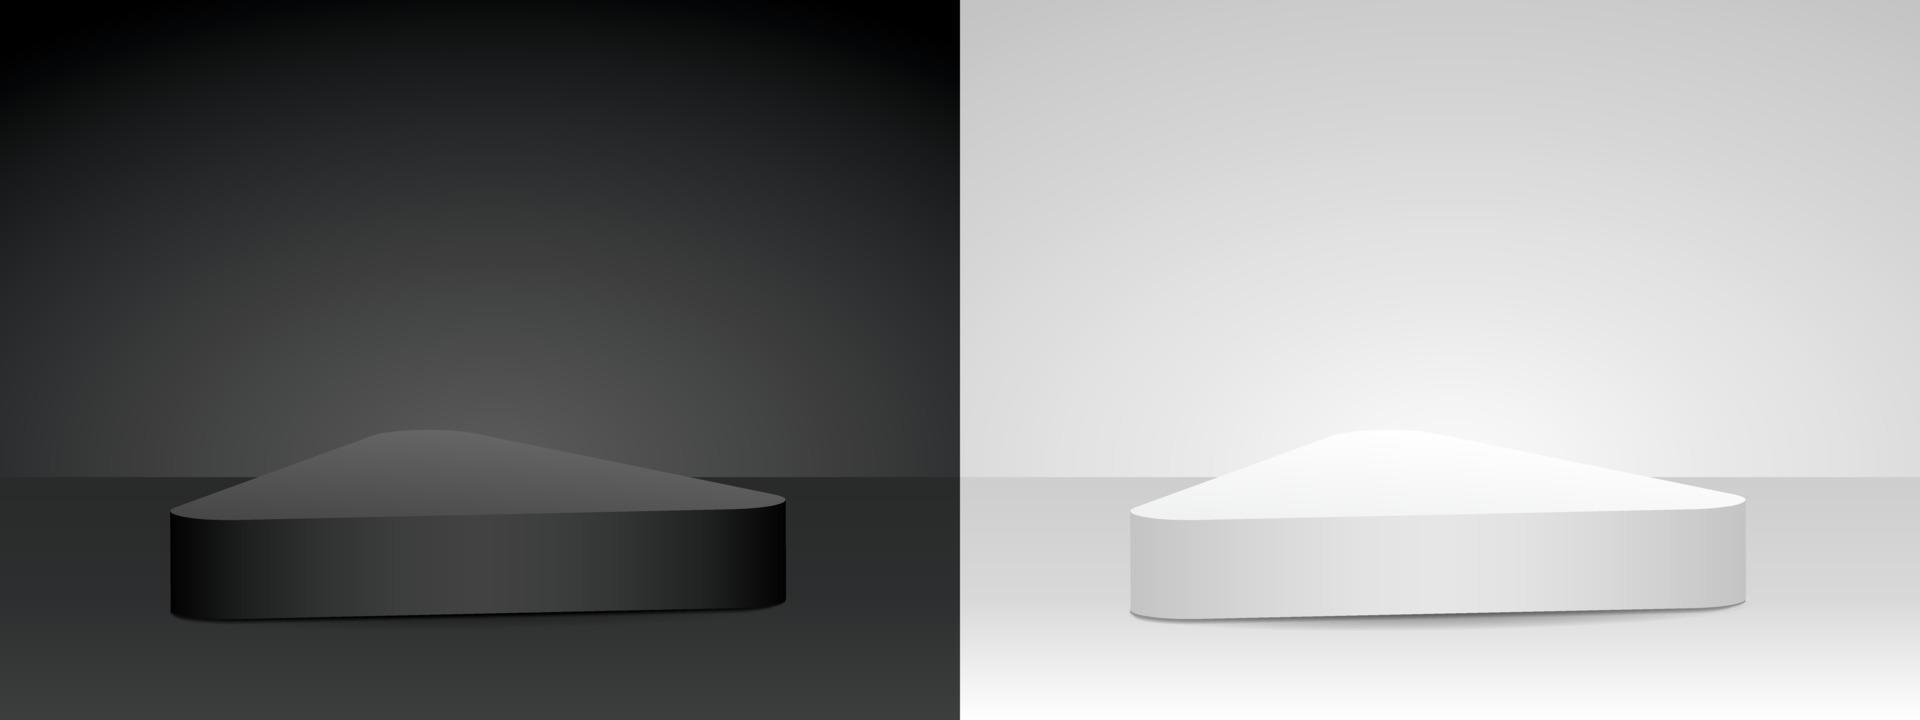 cool zwart-wit minimale driehoek product podium 3d illustratie vector voor het plaatsen van uw object